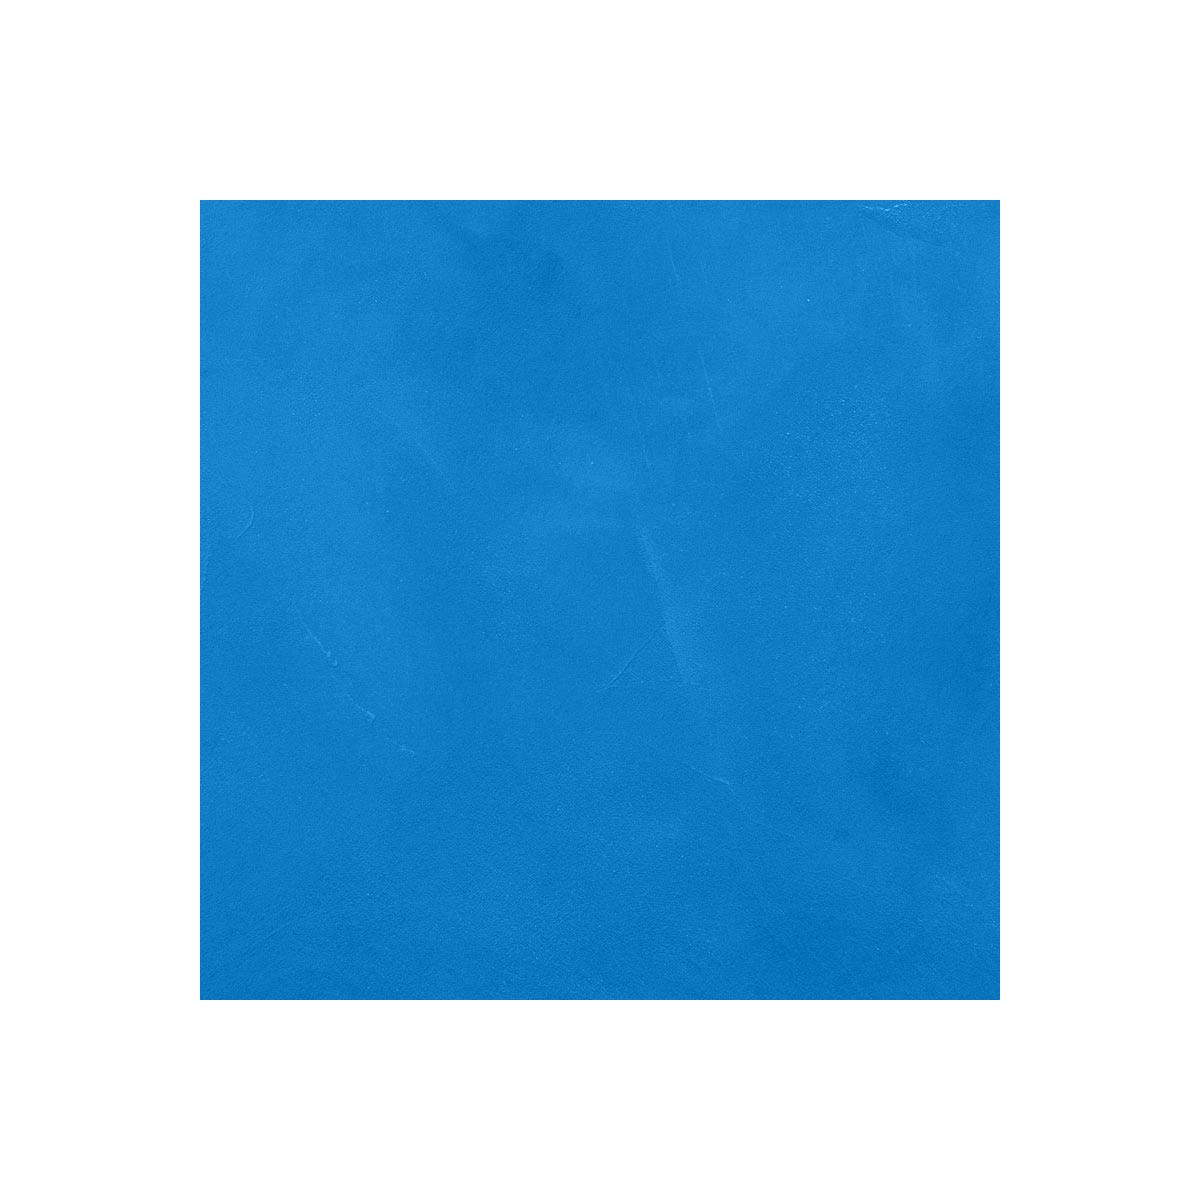 BETON CIRE CARRELAGE POUR SOLS ET MURS - KIT BETON CIRE SUR CARRELAGE - 2 m² (en 2 couches) - Prussia Bleu - ARCANE INDUSTRIES 1